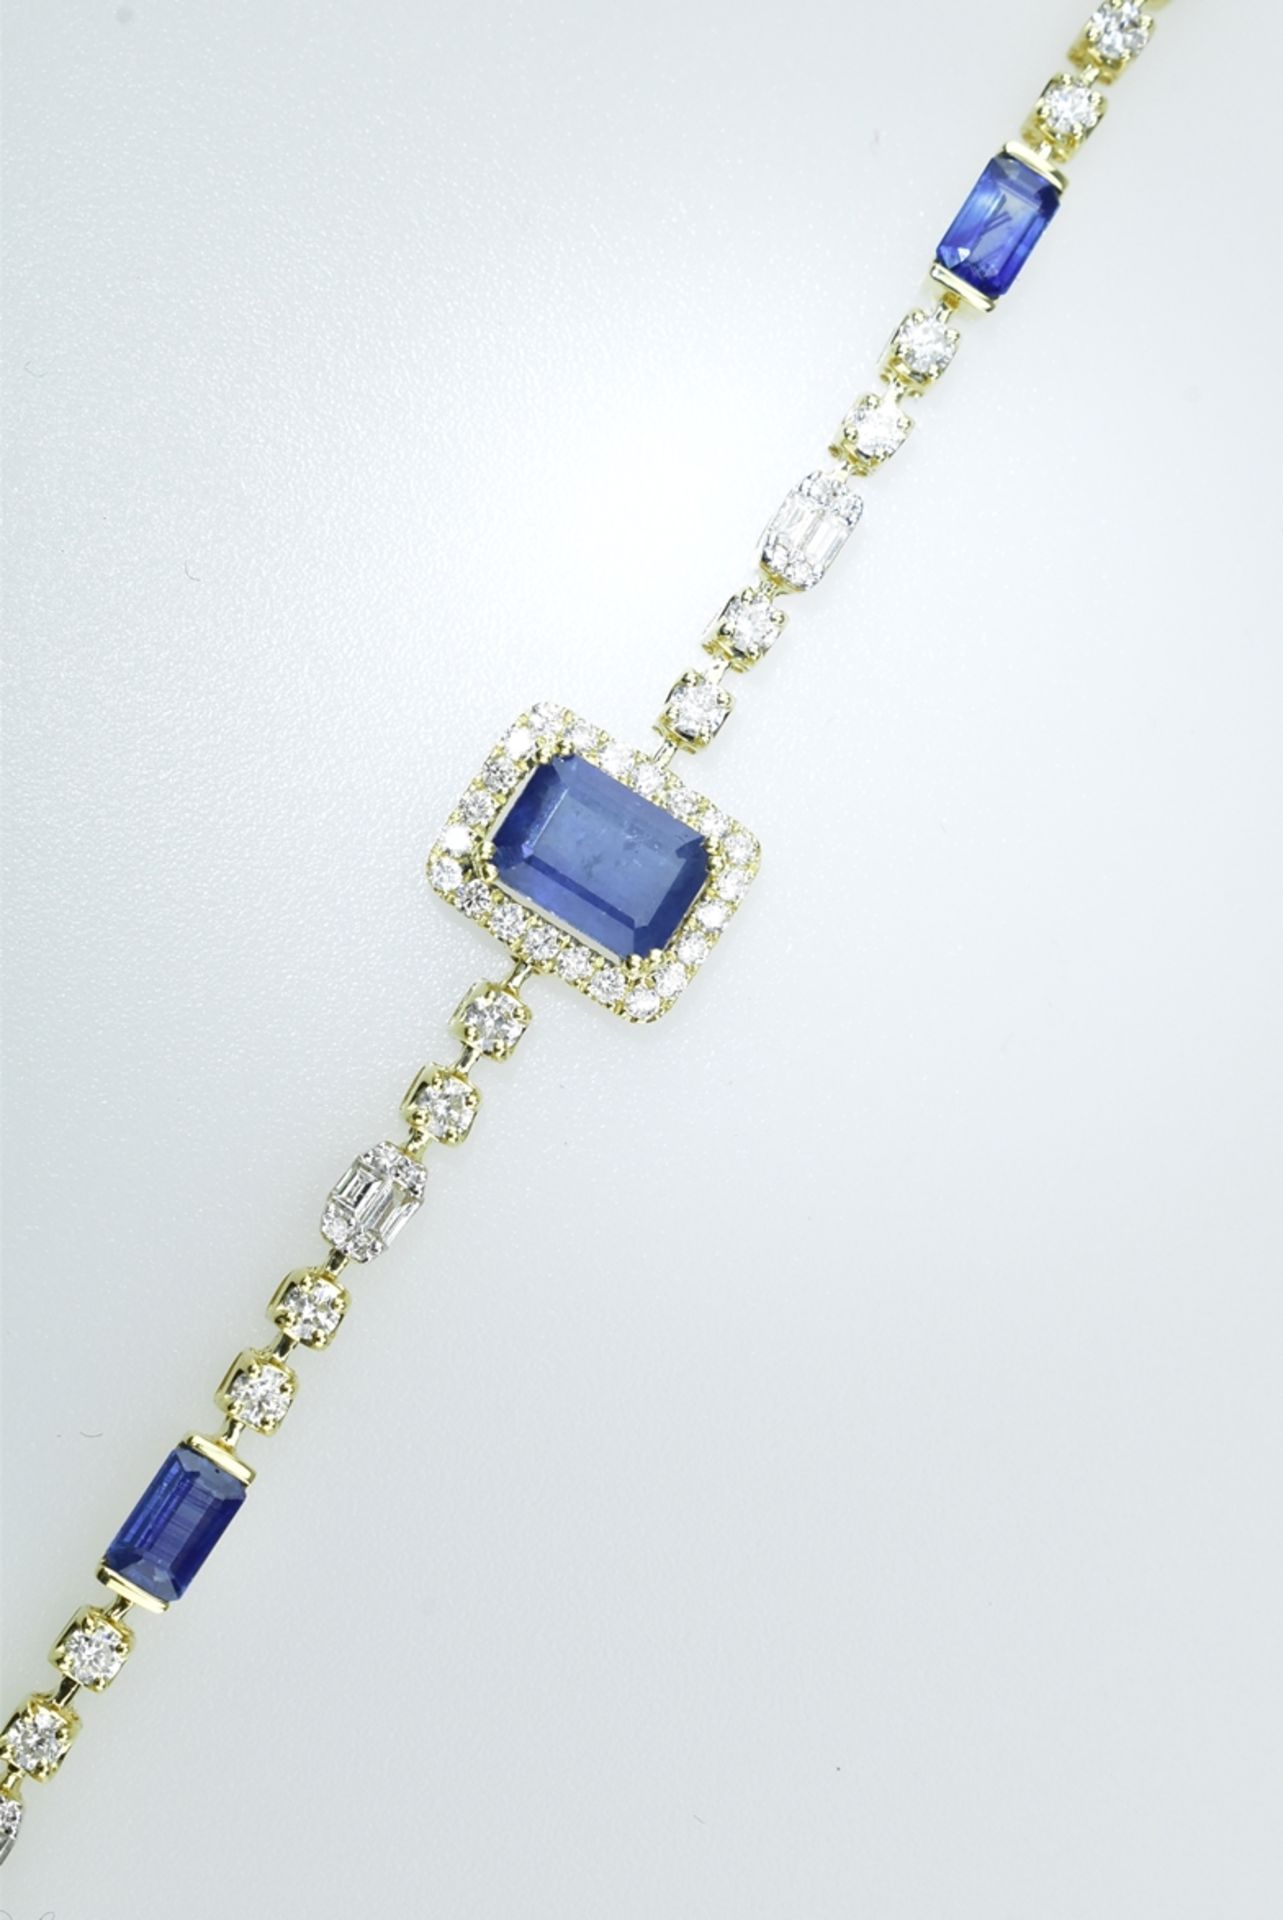 Feines Saphir-Brillantarmband. Blaue Saphire 2,5 ct. Diamantbaguetten und Brillanten von ca. 1,40 c - Bild 2 aus 2